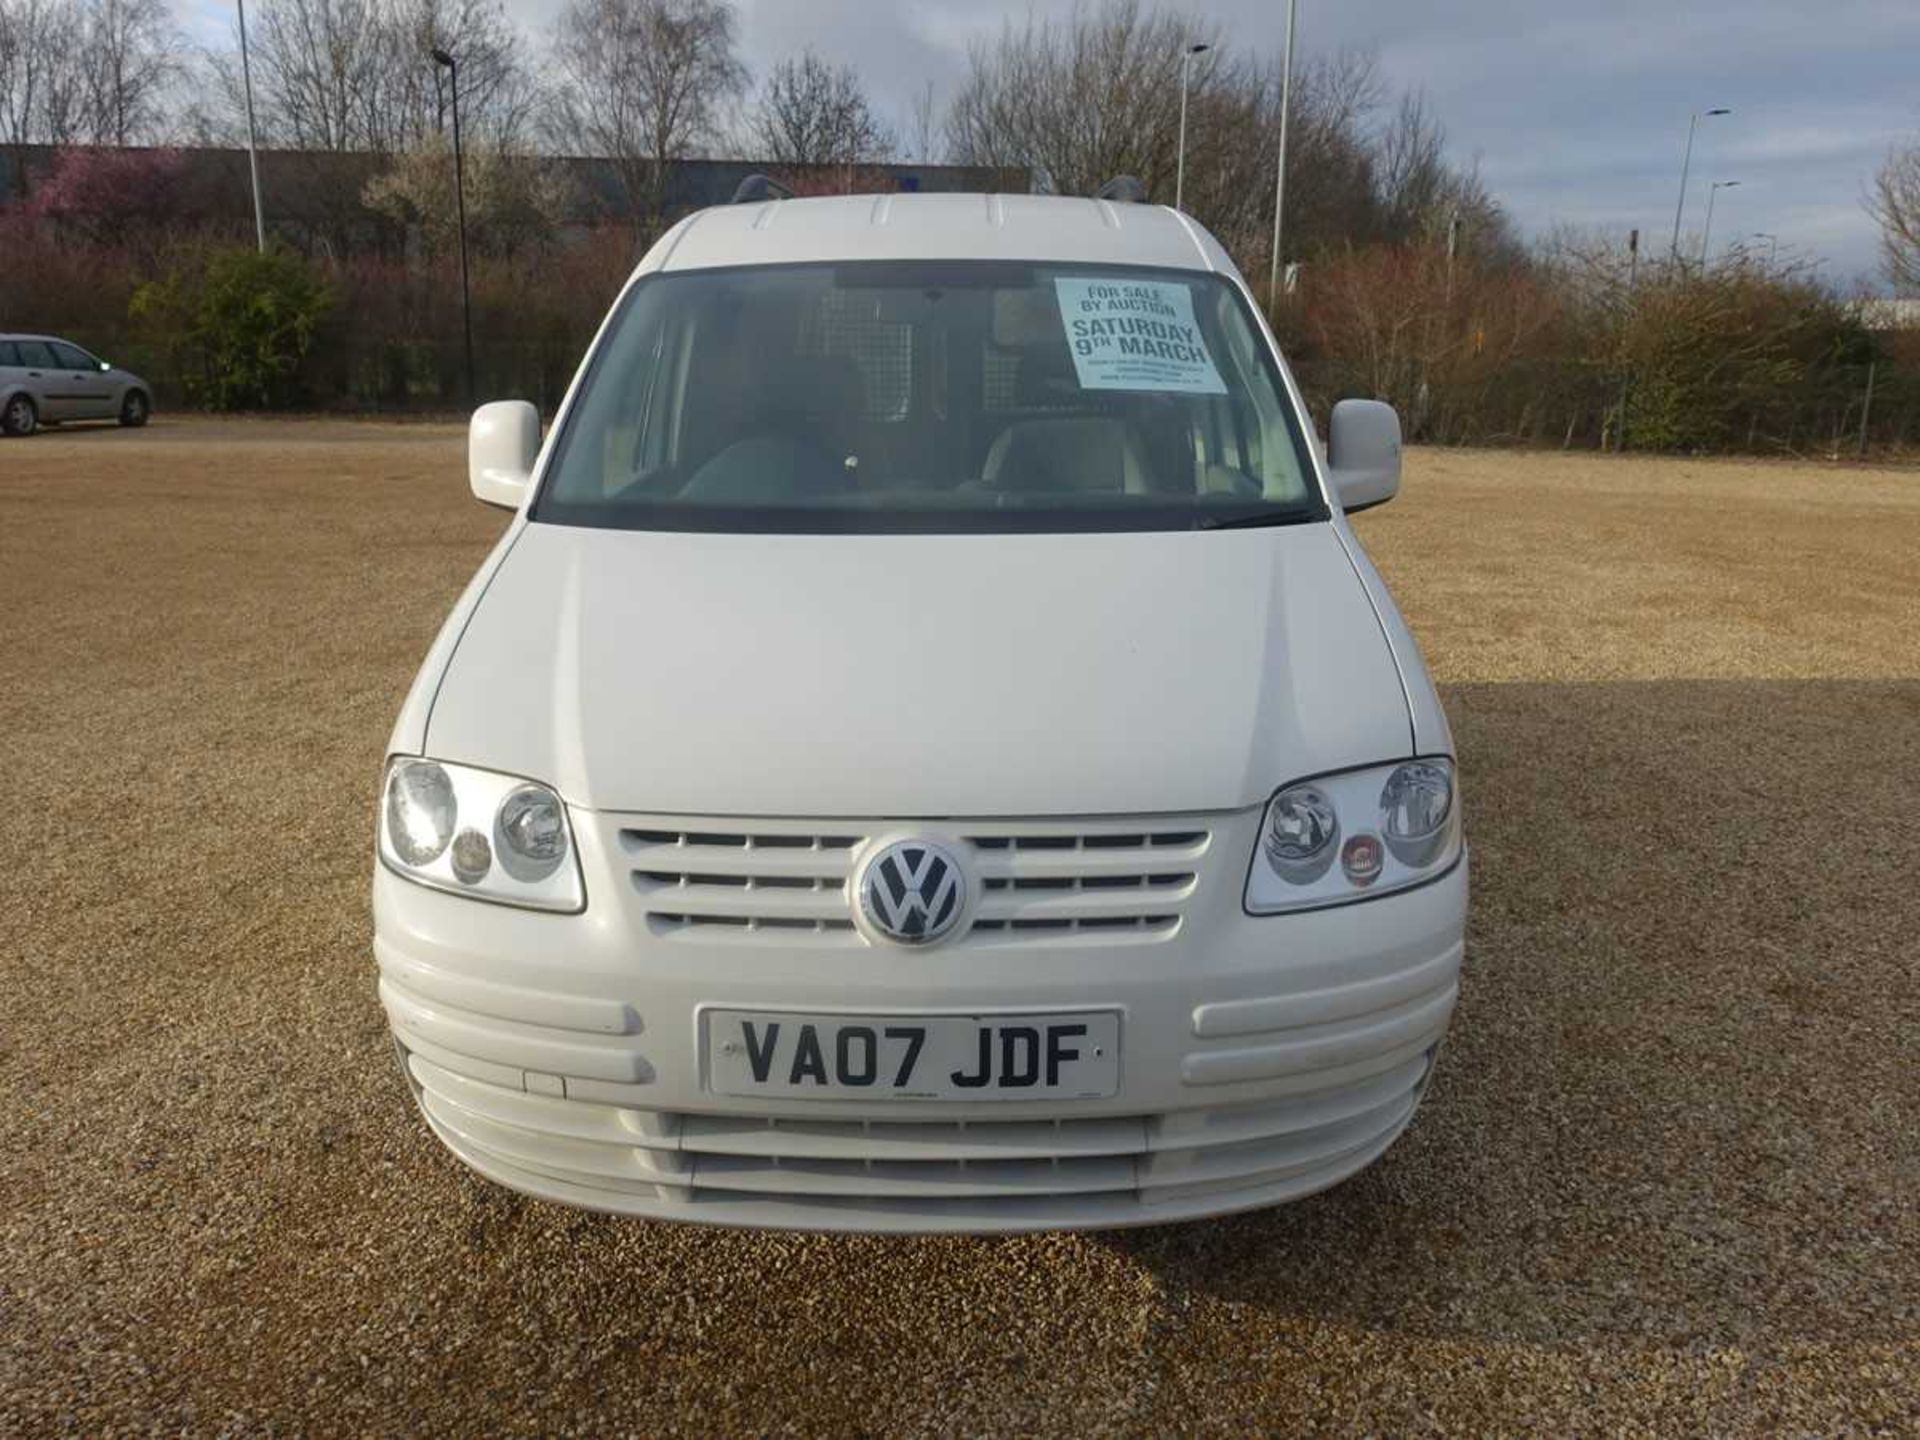 (VA07 JDF) Volkswagen Caddy C20 TDi 104 Van in white, first registered 27/07/2007, 2 door, 5 speed - Image 2 of 10